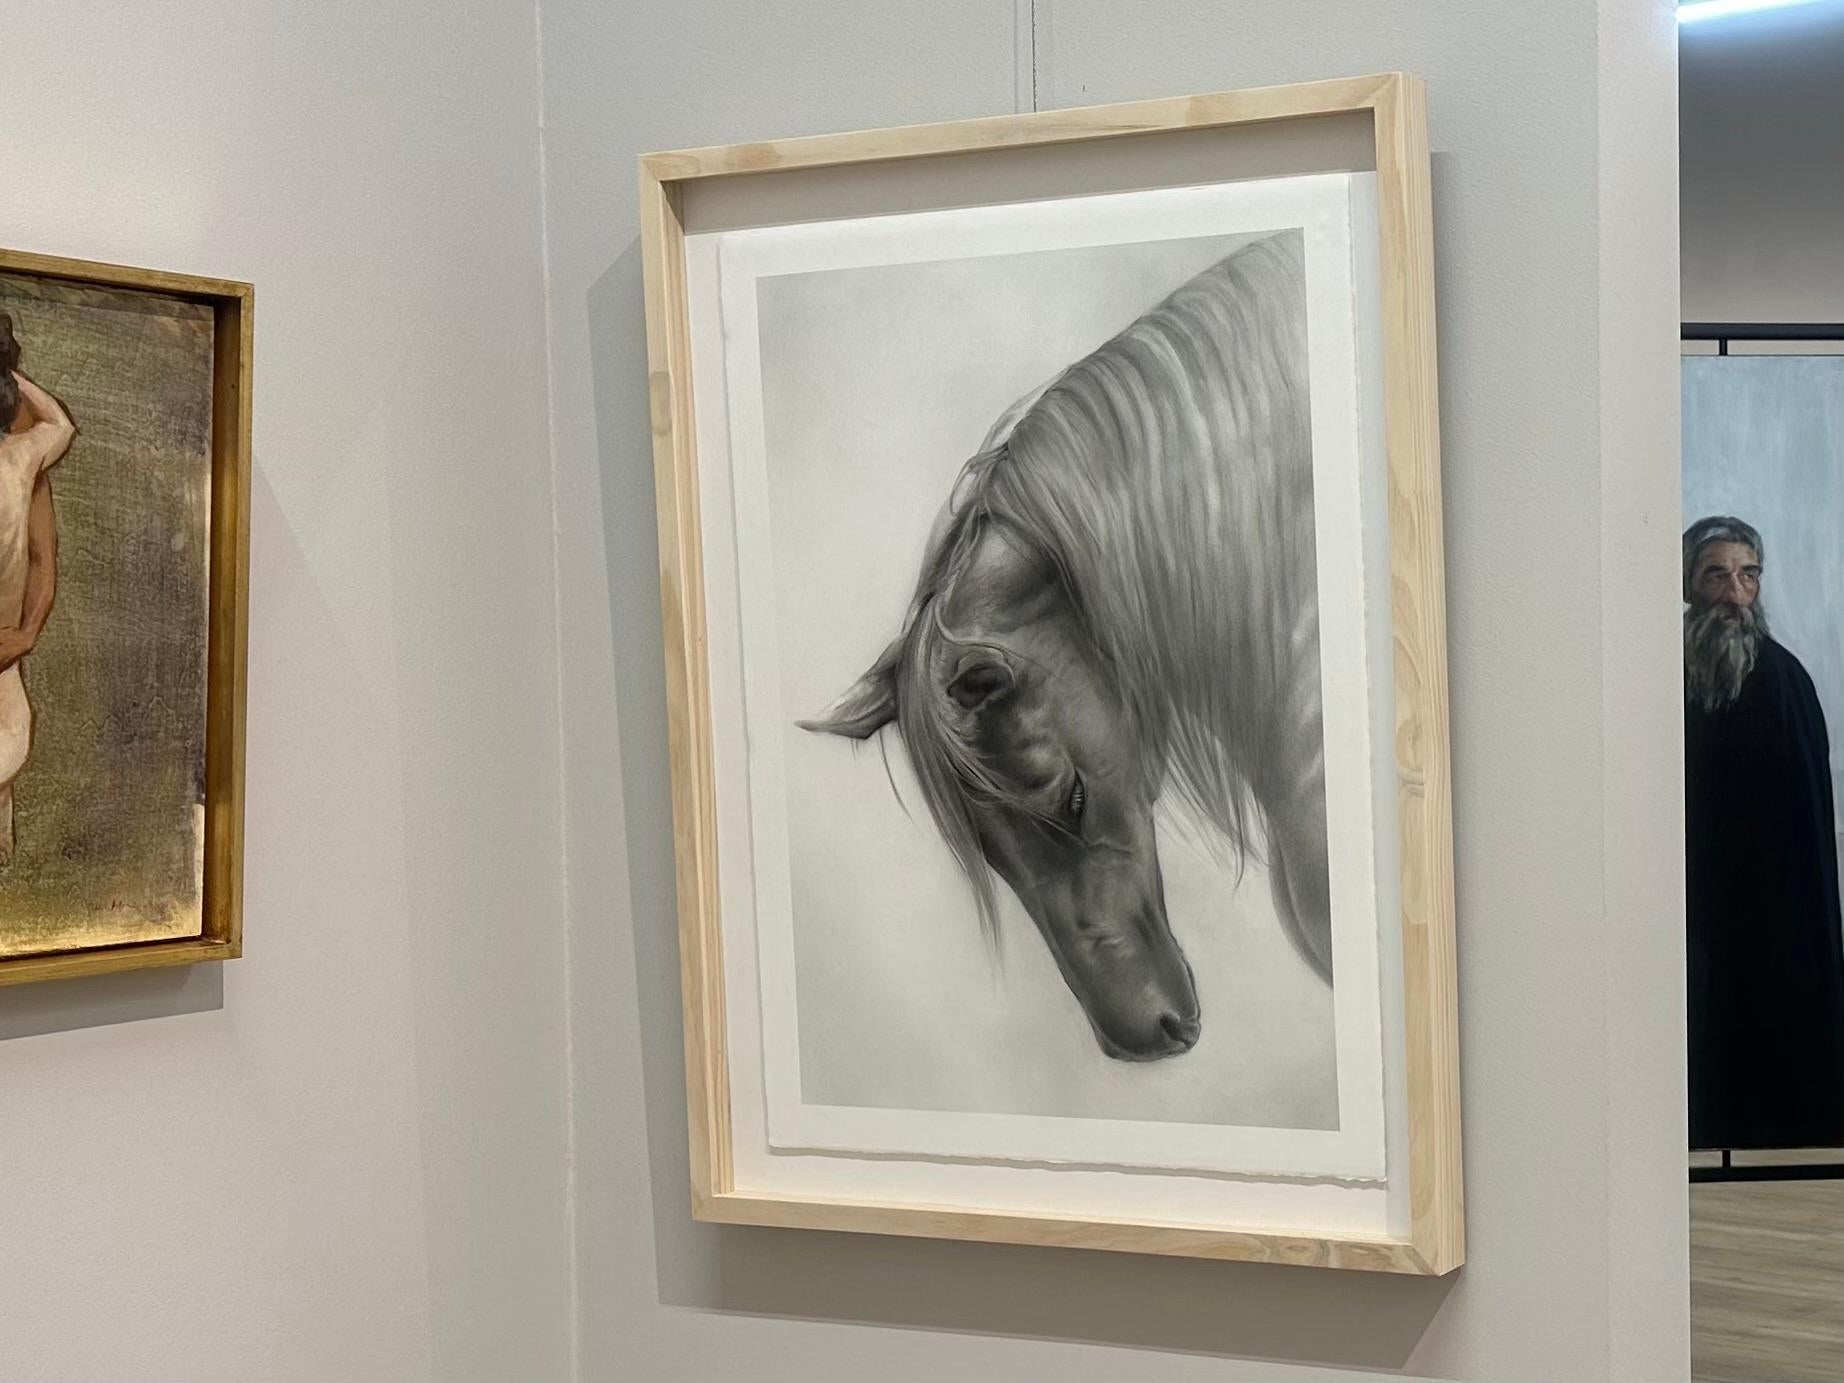 Rosanna Gaddoni
Inchino
65 x 50 cm (encadré dans un cadre en bois avec verre de musée)
Dimensions avec le cadre inclus : 80 x 60 cm

L'artiste italienne Rosanna Gaddoni puise son inspiration dans la beauté des gens et de la nature. Dans son style